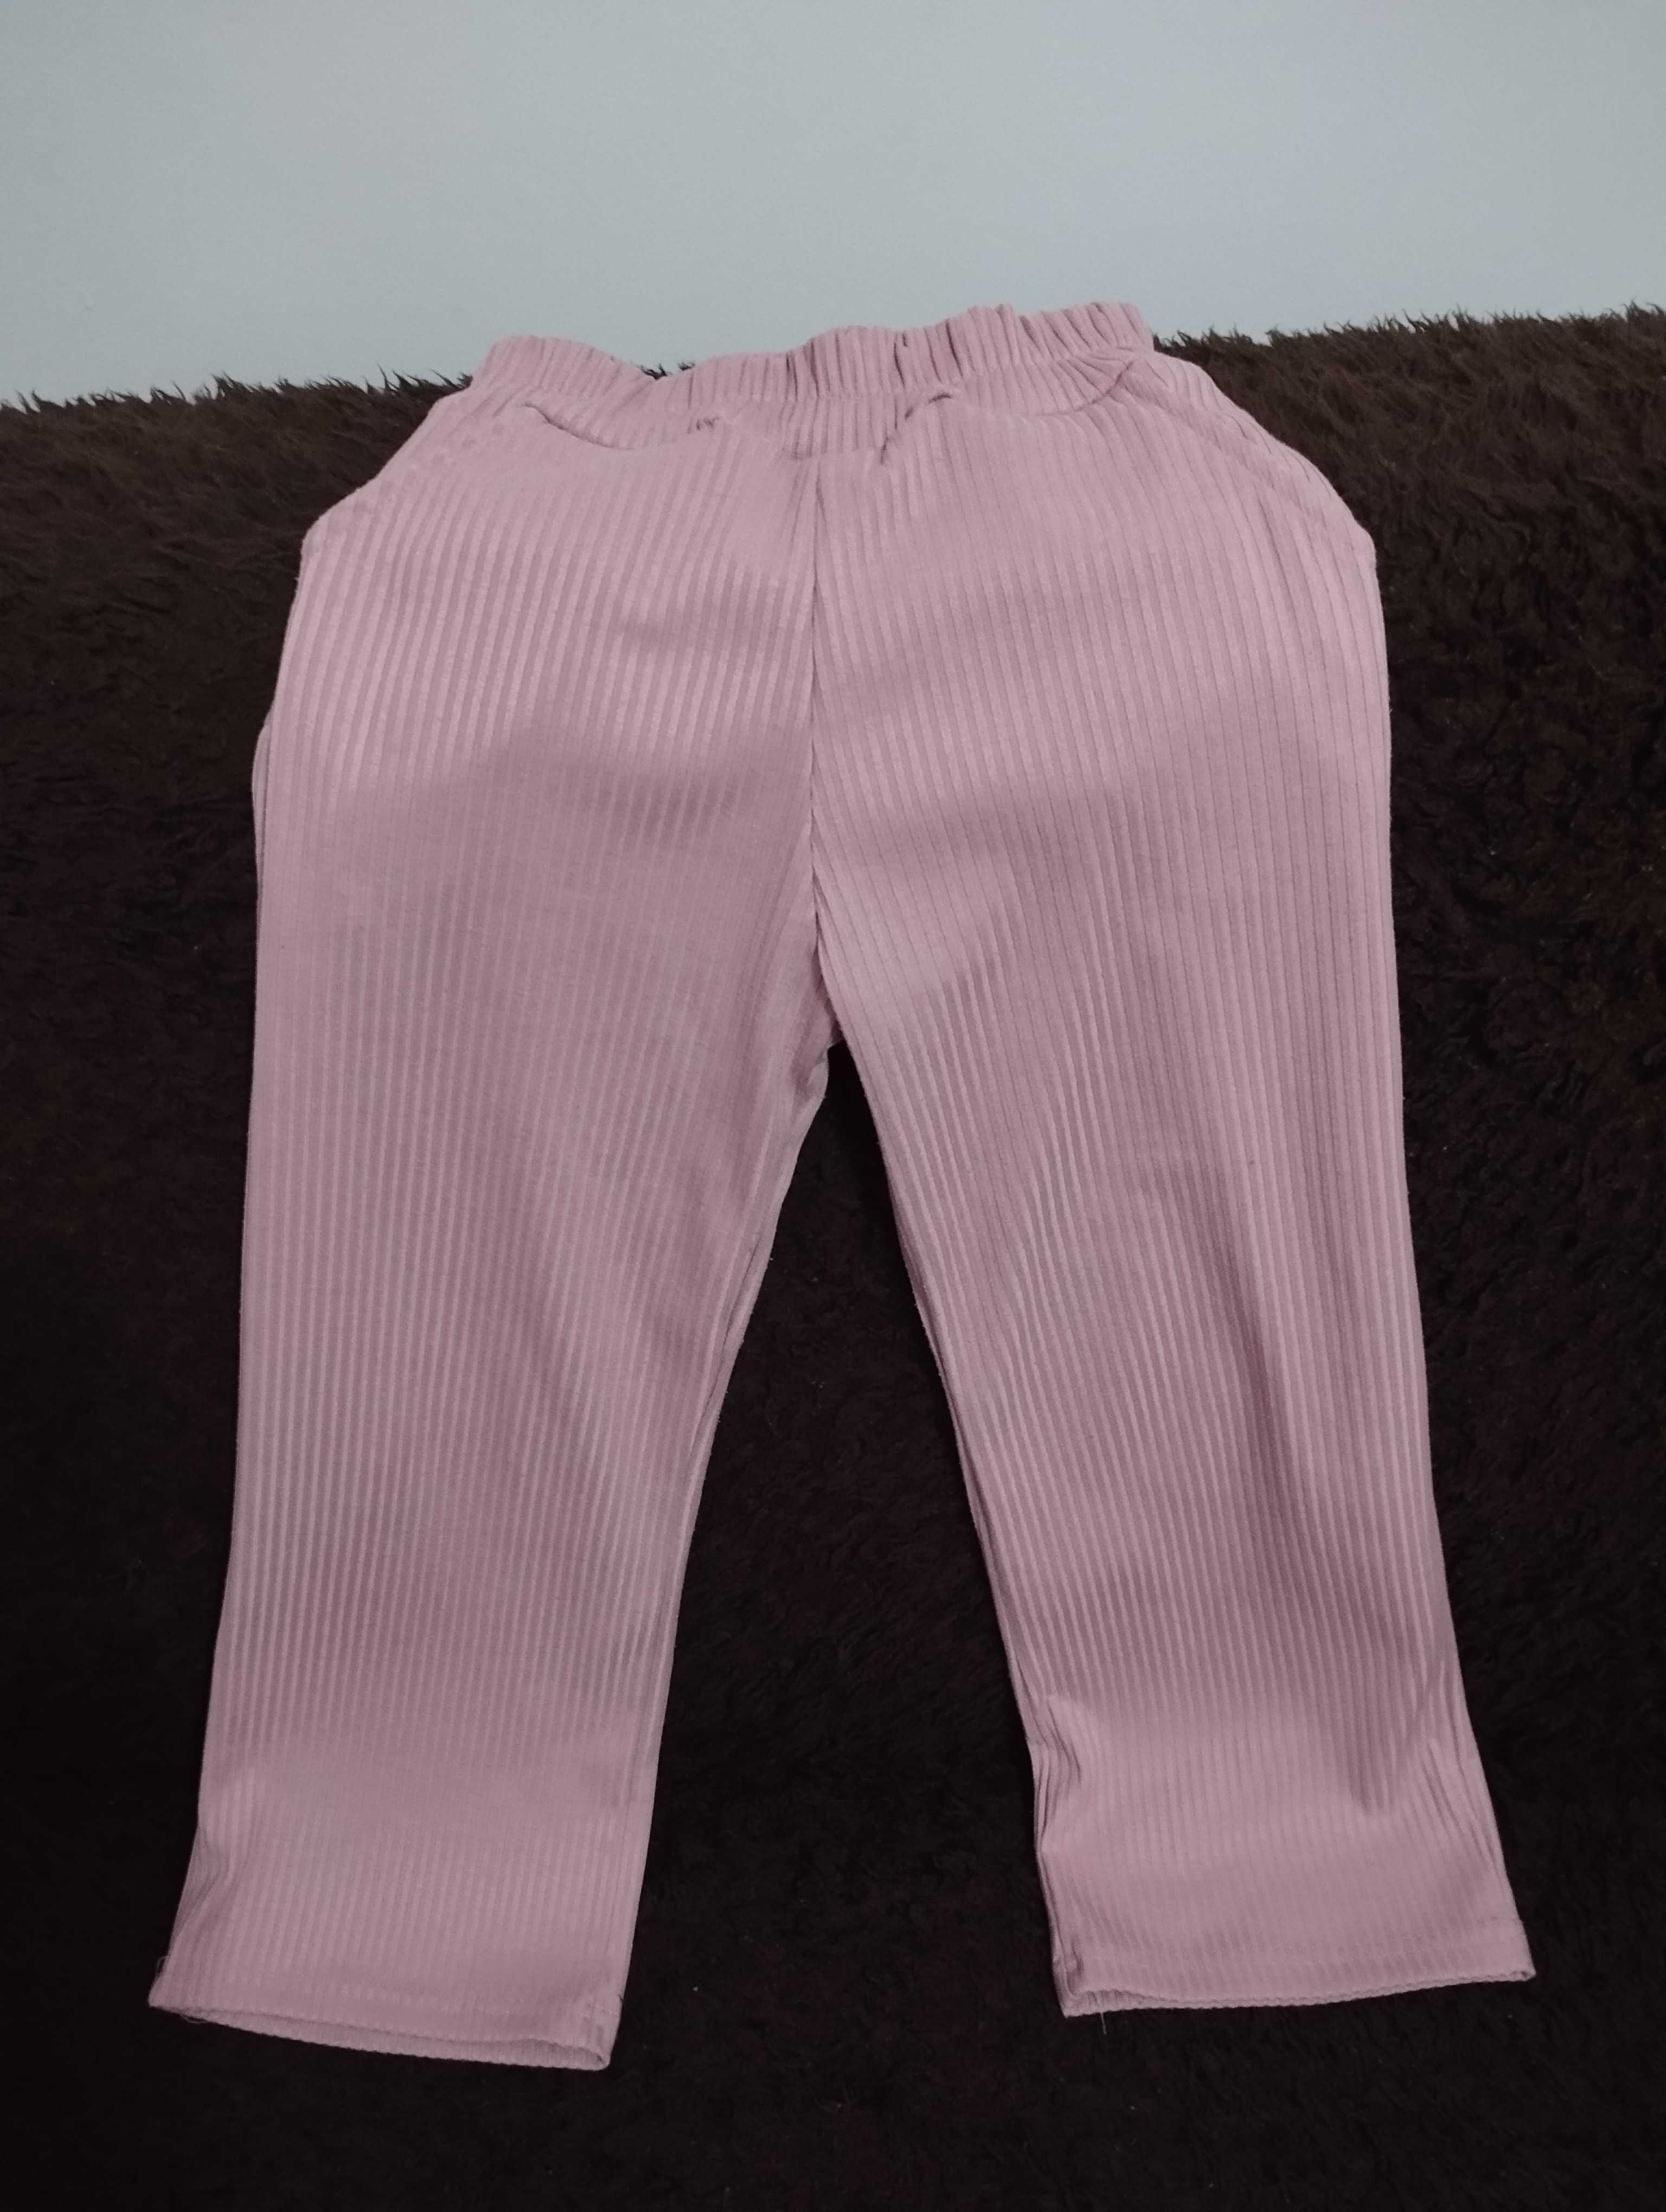 Bluzka elegancka r. 128 i spodnie